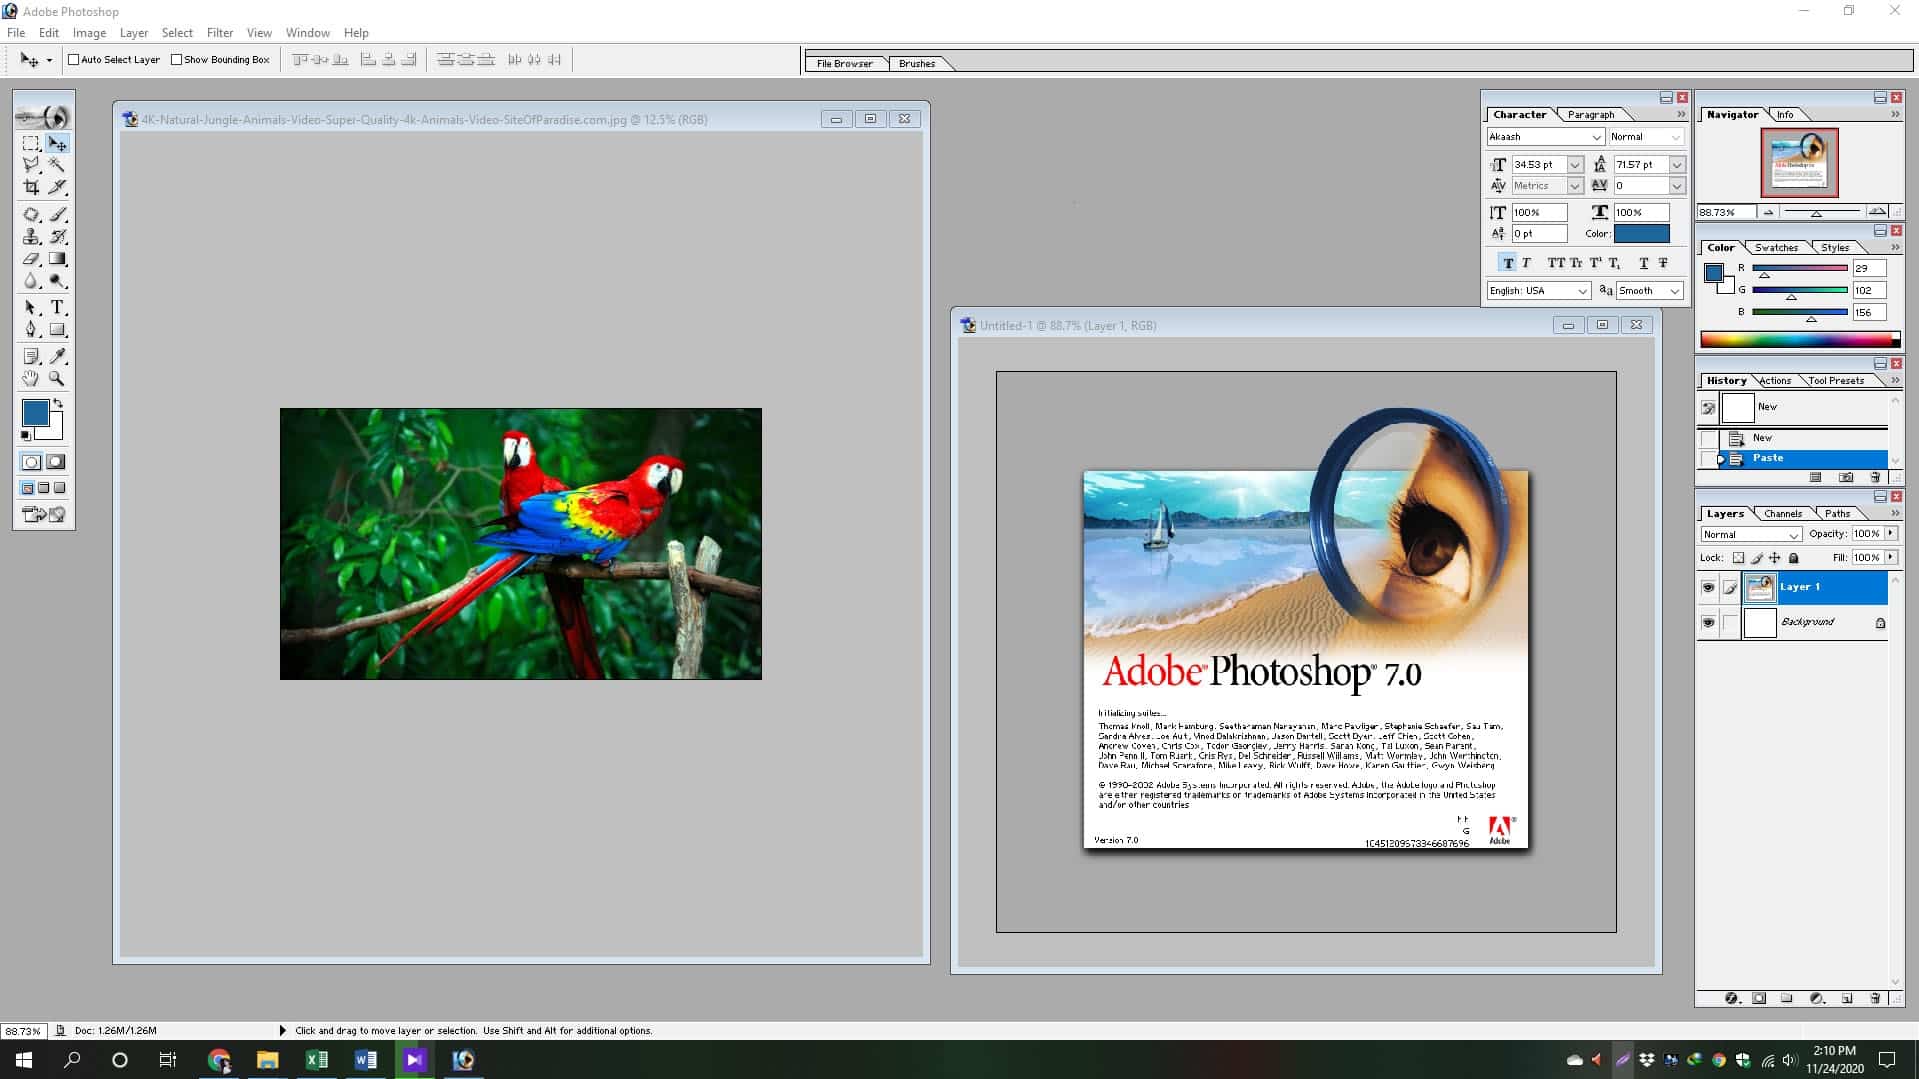 Download Adobe Photoshop 7.0 32 / 64-Bit (Free Download) - Matob